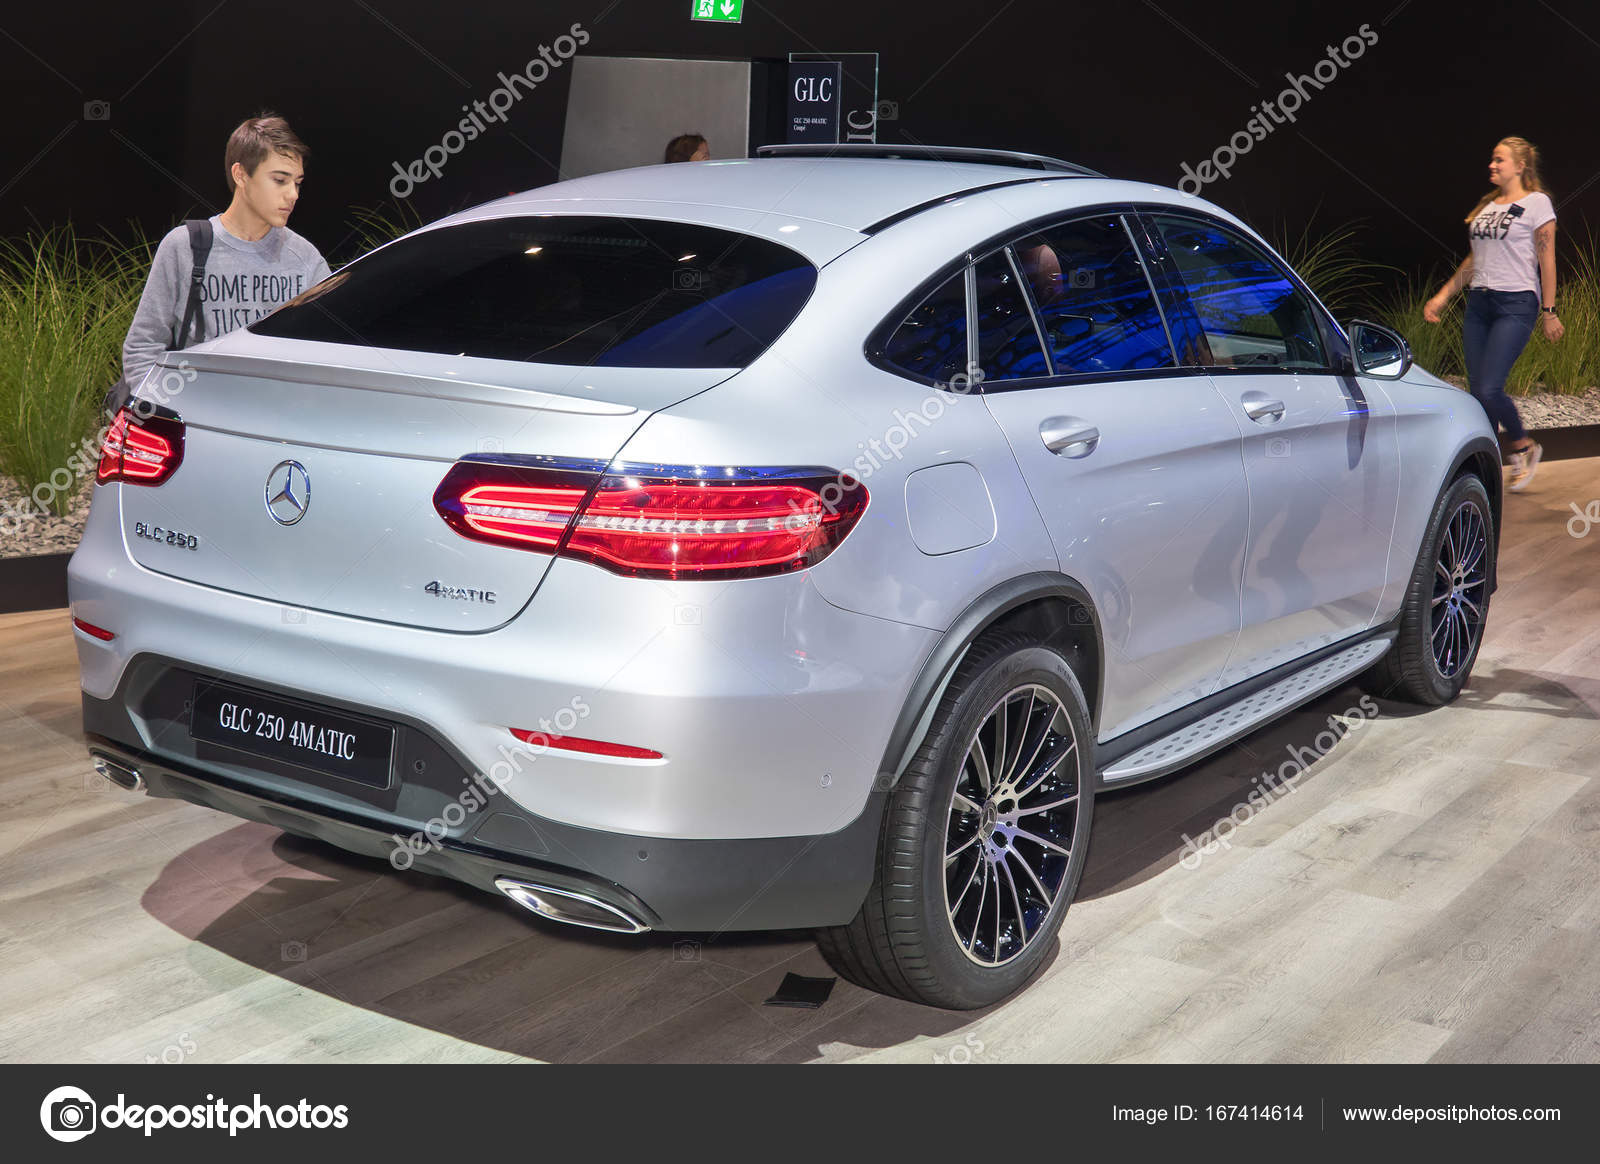 4matic de Mercedes-Benz Glc 250 — Foto editorial de stock © eans #167414614